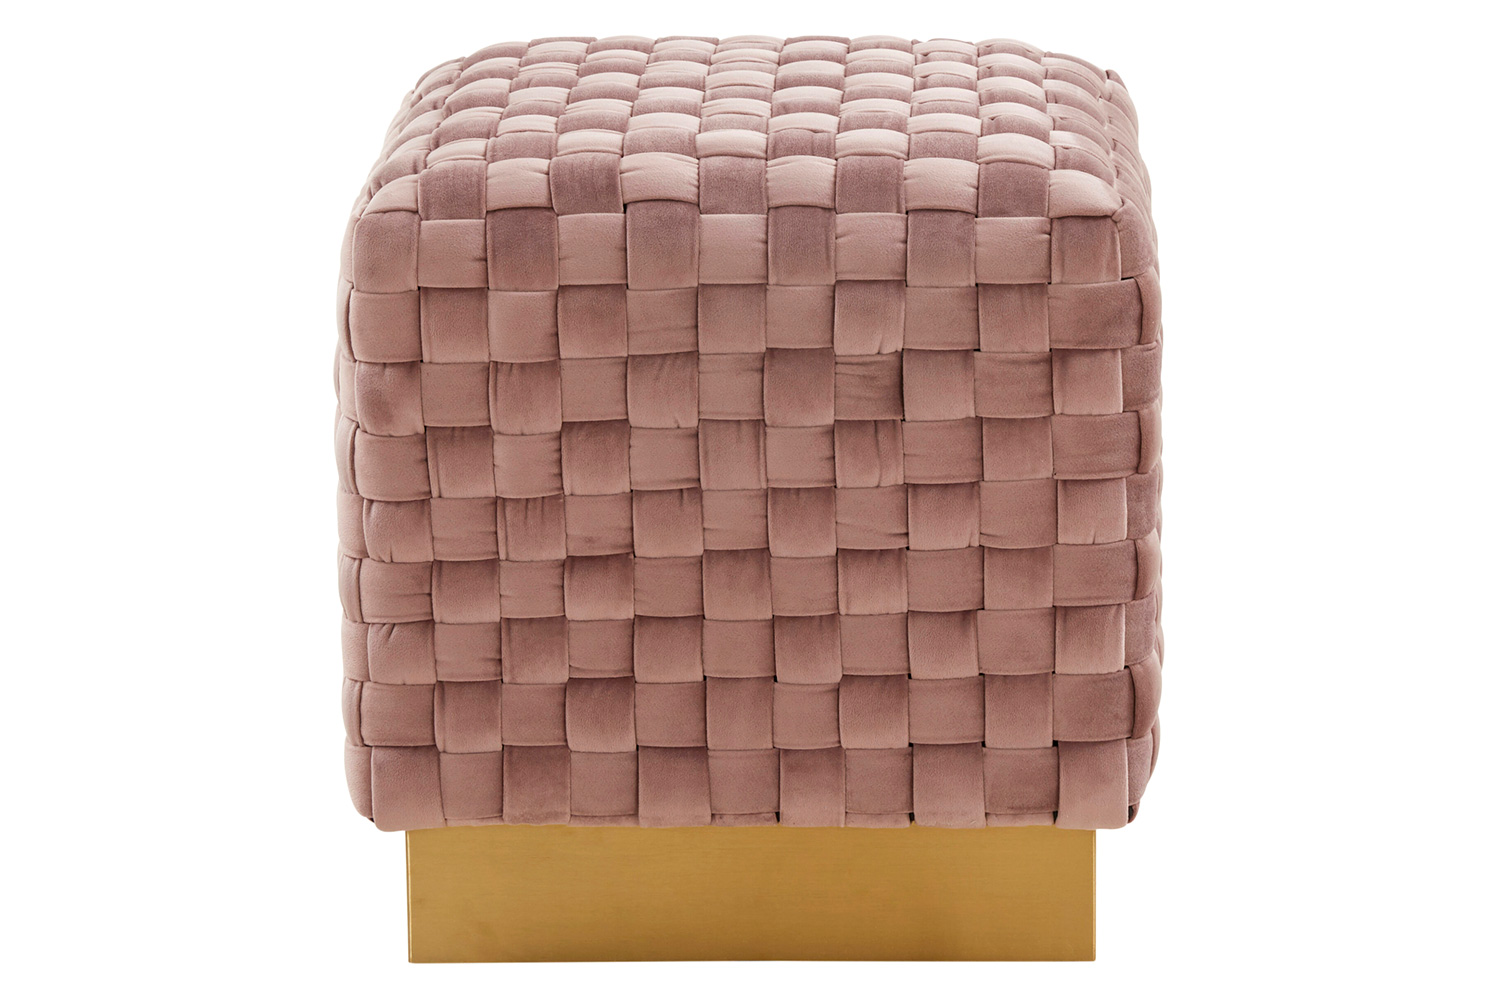 LeisureMod™ Myrtle 19" Square Weave Design Velvet Ottoman with Gold Base - Pink
